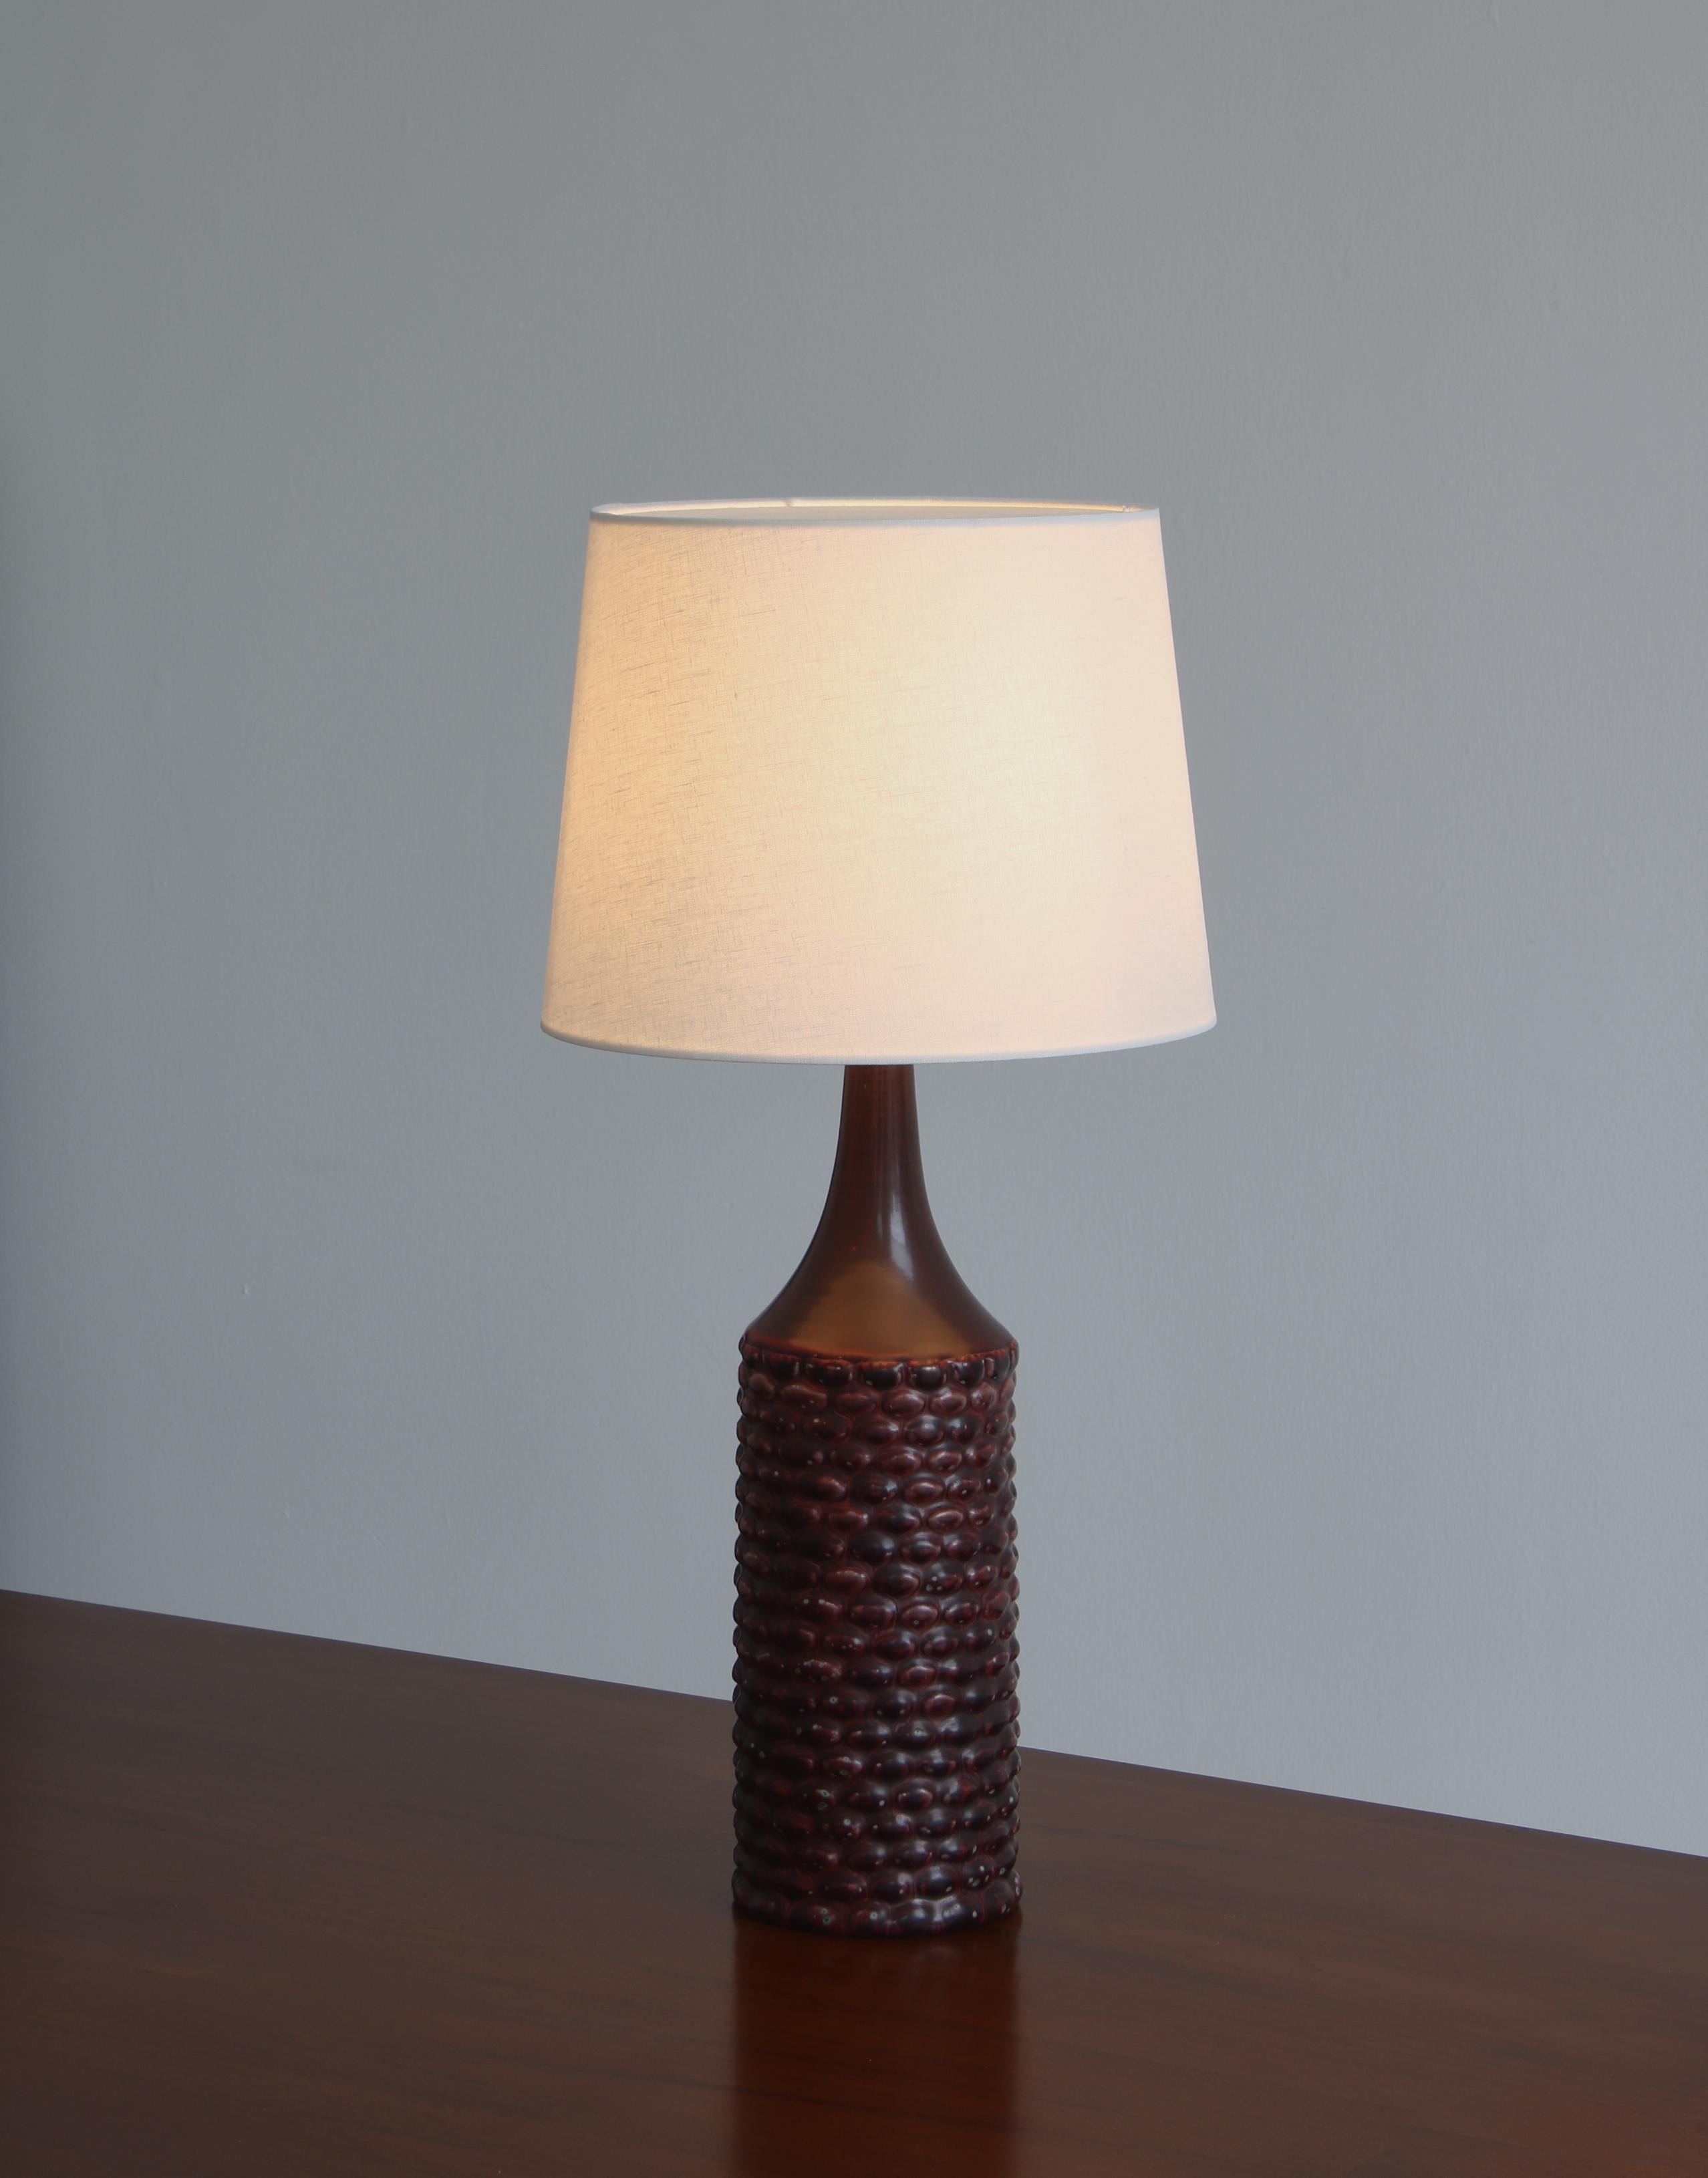 Scandinavian Modern Axel Salto Large Table Lamp in Oxblood Glaze from Royal Copenhagen, 1958 For Sale